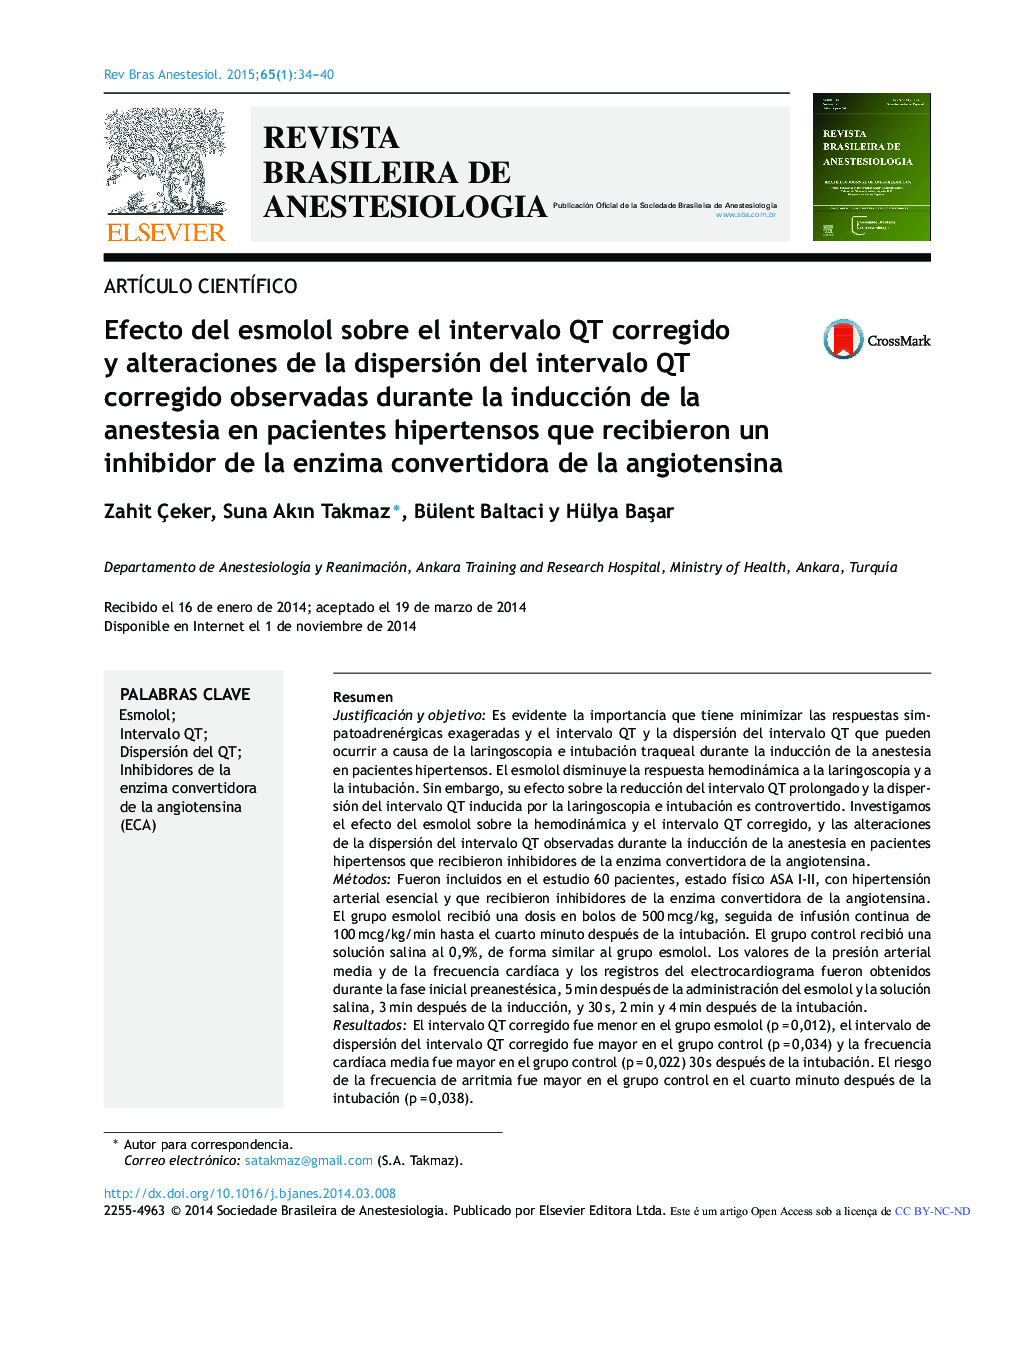 Efecto del esmolol sobre el intervalo QT corregido y alteraciones de la dispersión del intervalo QT corregido observadas durante la inducción de la anestesia en pacientes hipertensos que recibieron un inhibidor de la enzima convertidora de la angiotensina